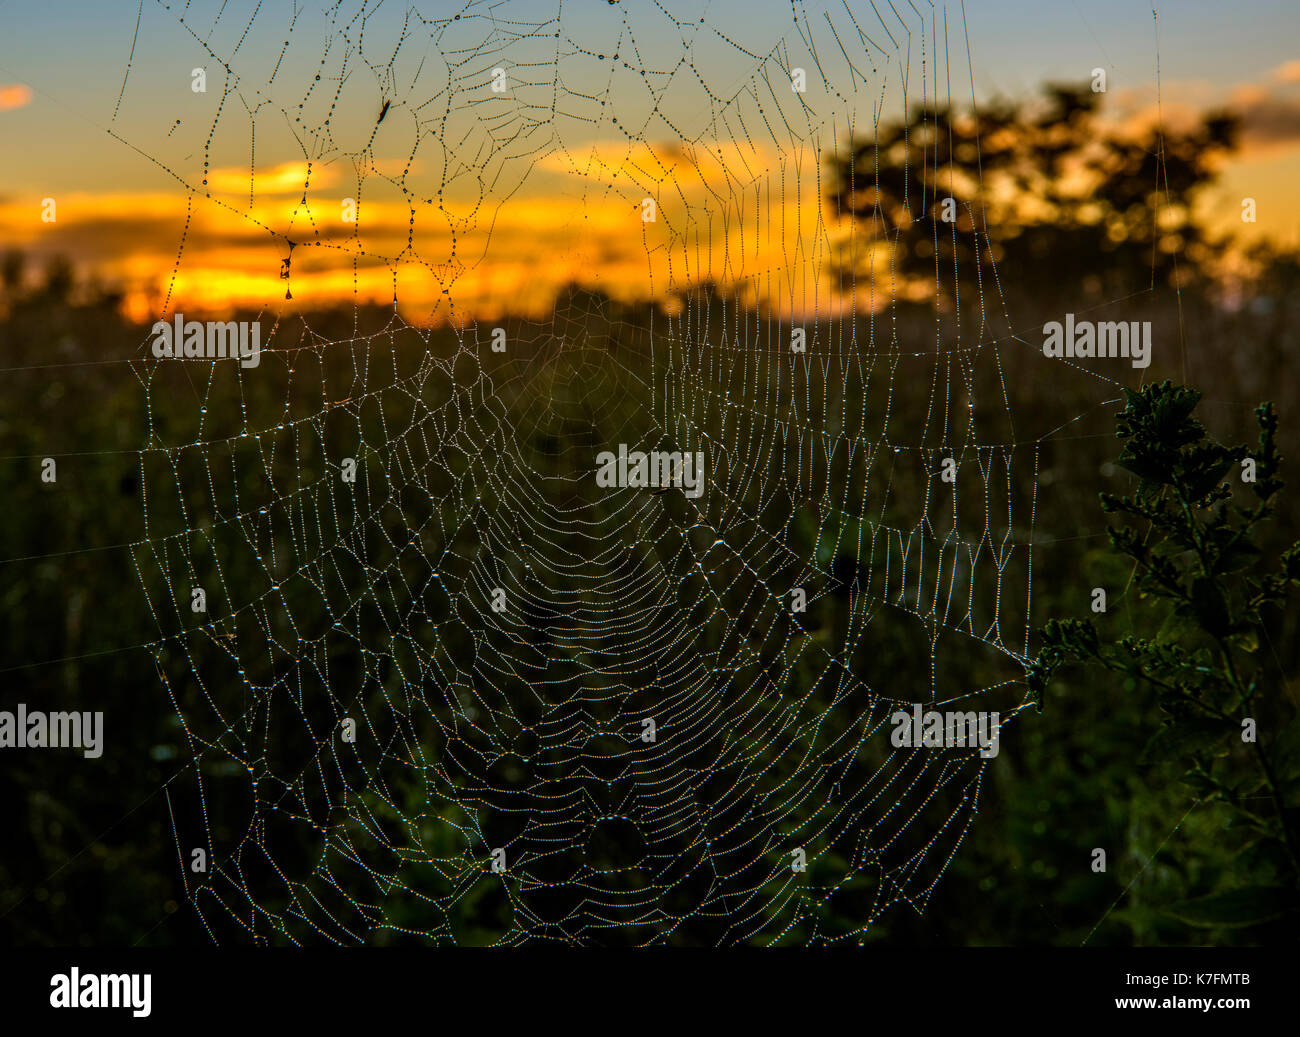 Gotas de agua sobre la tela de araña durante el amanecer en el bosque de colores bellos amaneceres. Foto de stock